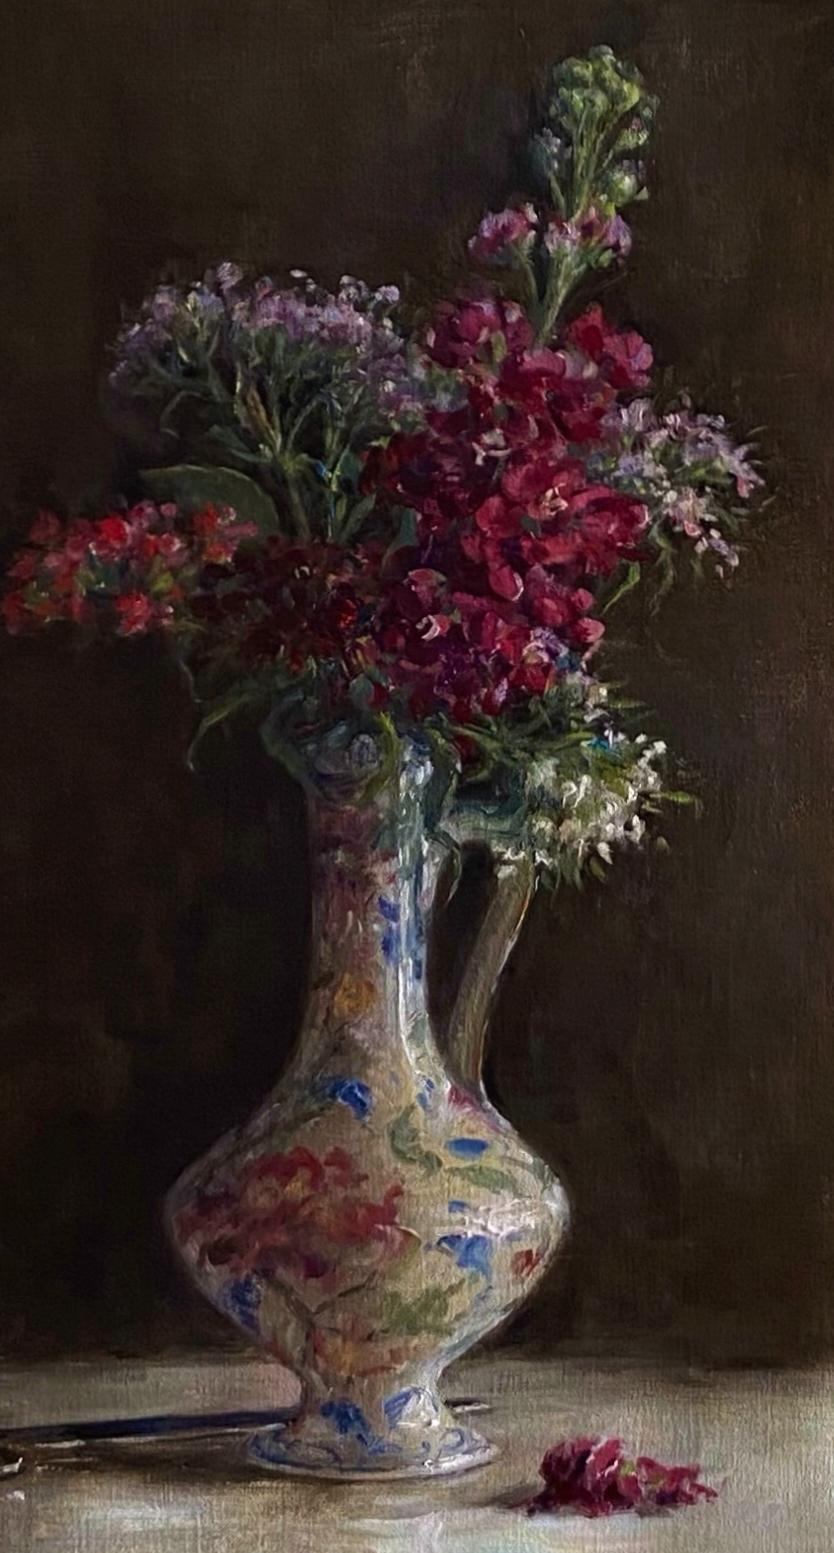 betty boop flower vase